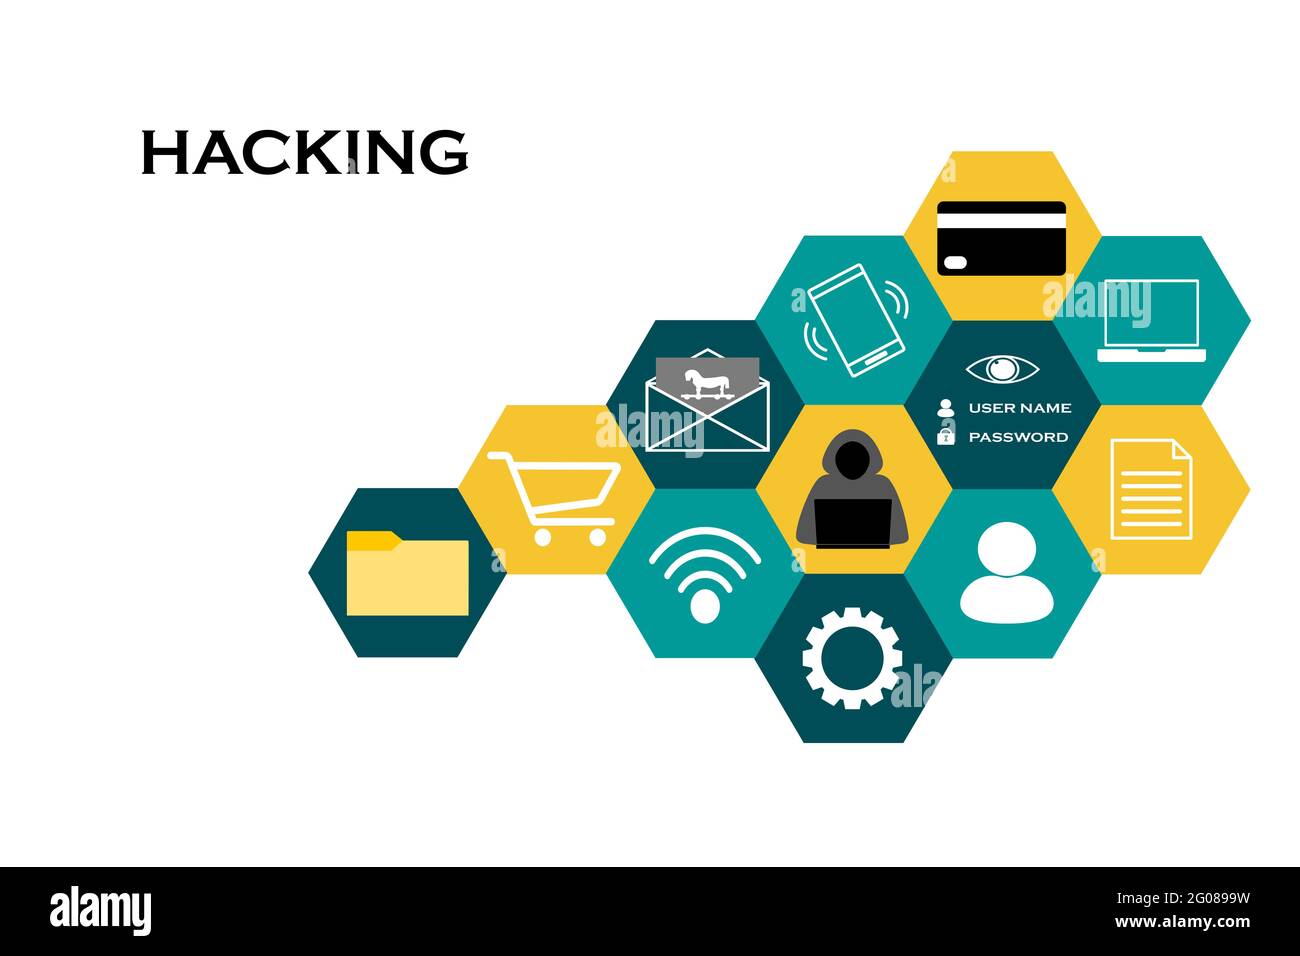 Le piratage et la sécurité des informations. Collage hexagonal d'acteurs, de moyens, de données et d'actifs de piratage à risque. Banque D'Images